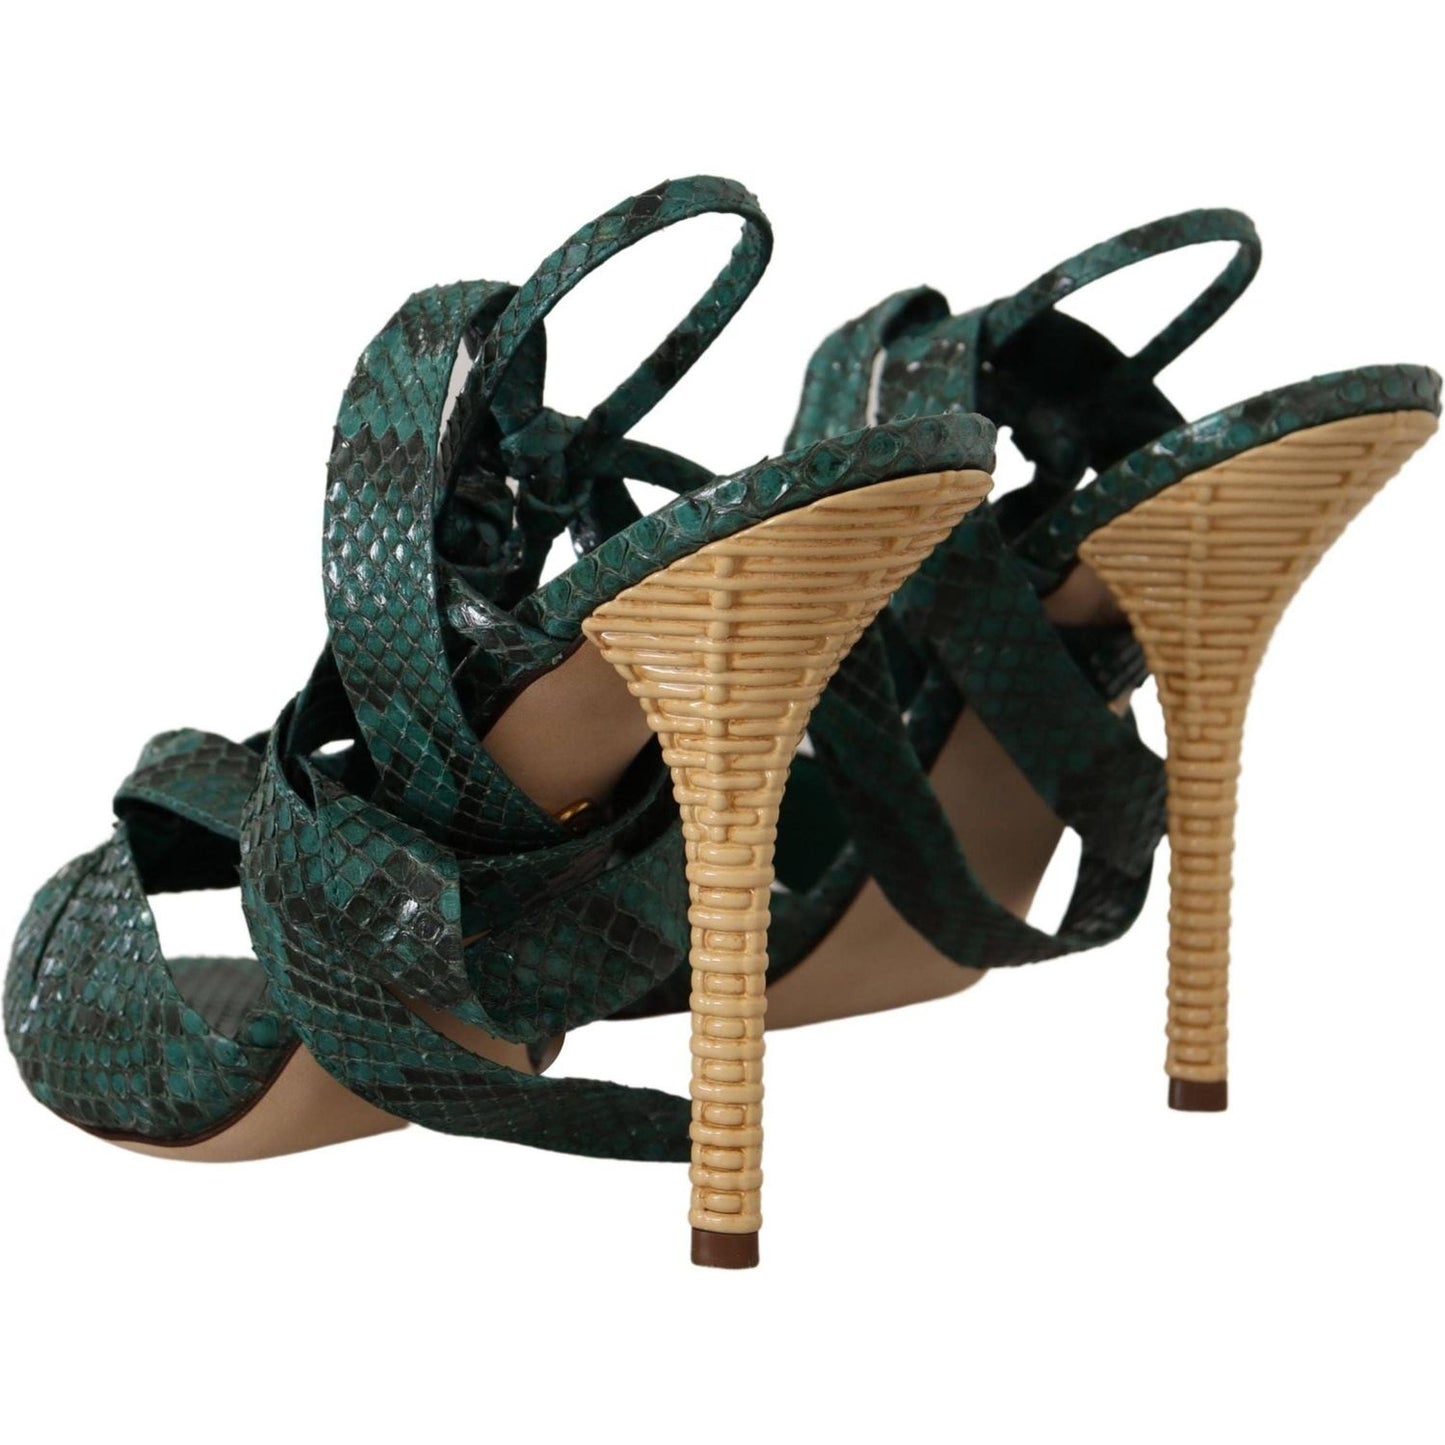 Dolce & Gabbana Elegant Green Python Strappy Heels green-python-strap-sandals-heels-shoes IMG_0359-scaled-ff10b261-7e4.jpg